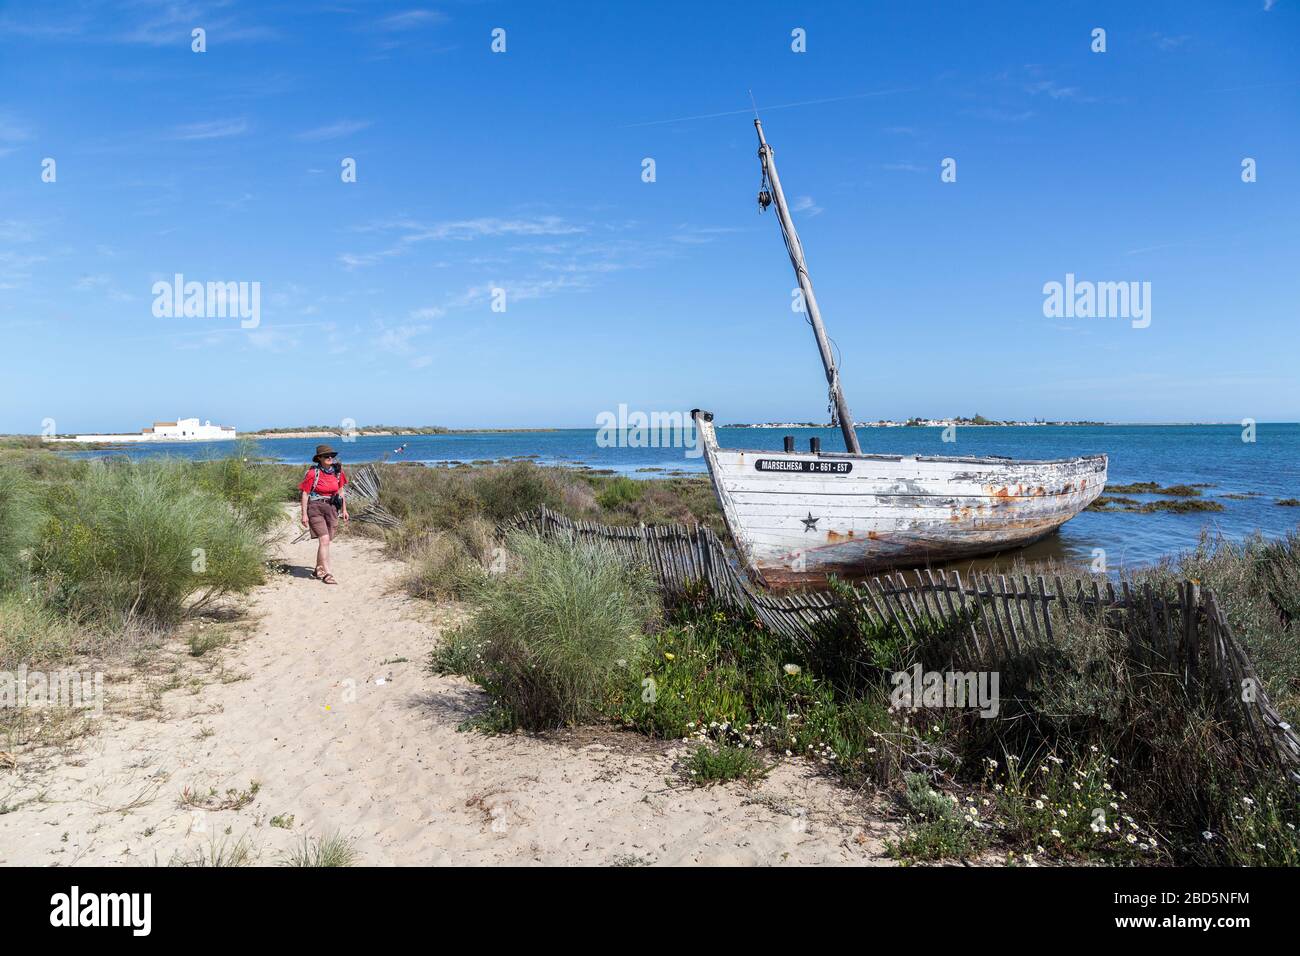 Vecchia barca abbandonata in baracche con camminatore sul sentiero costiero, Quinta de Marim, Parco Naturale Ria Formosa, Algarve, Portogallo Foto Stock